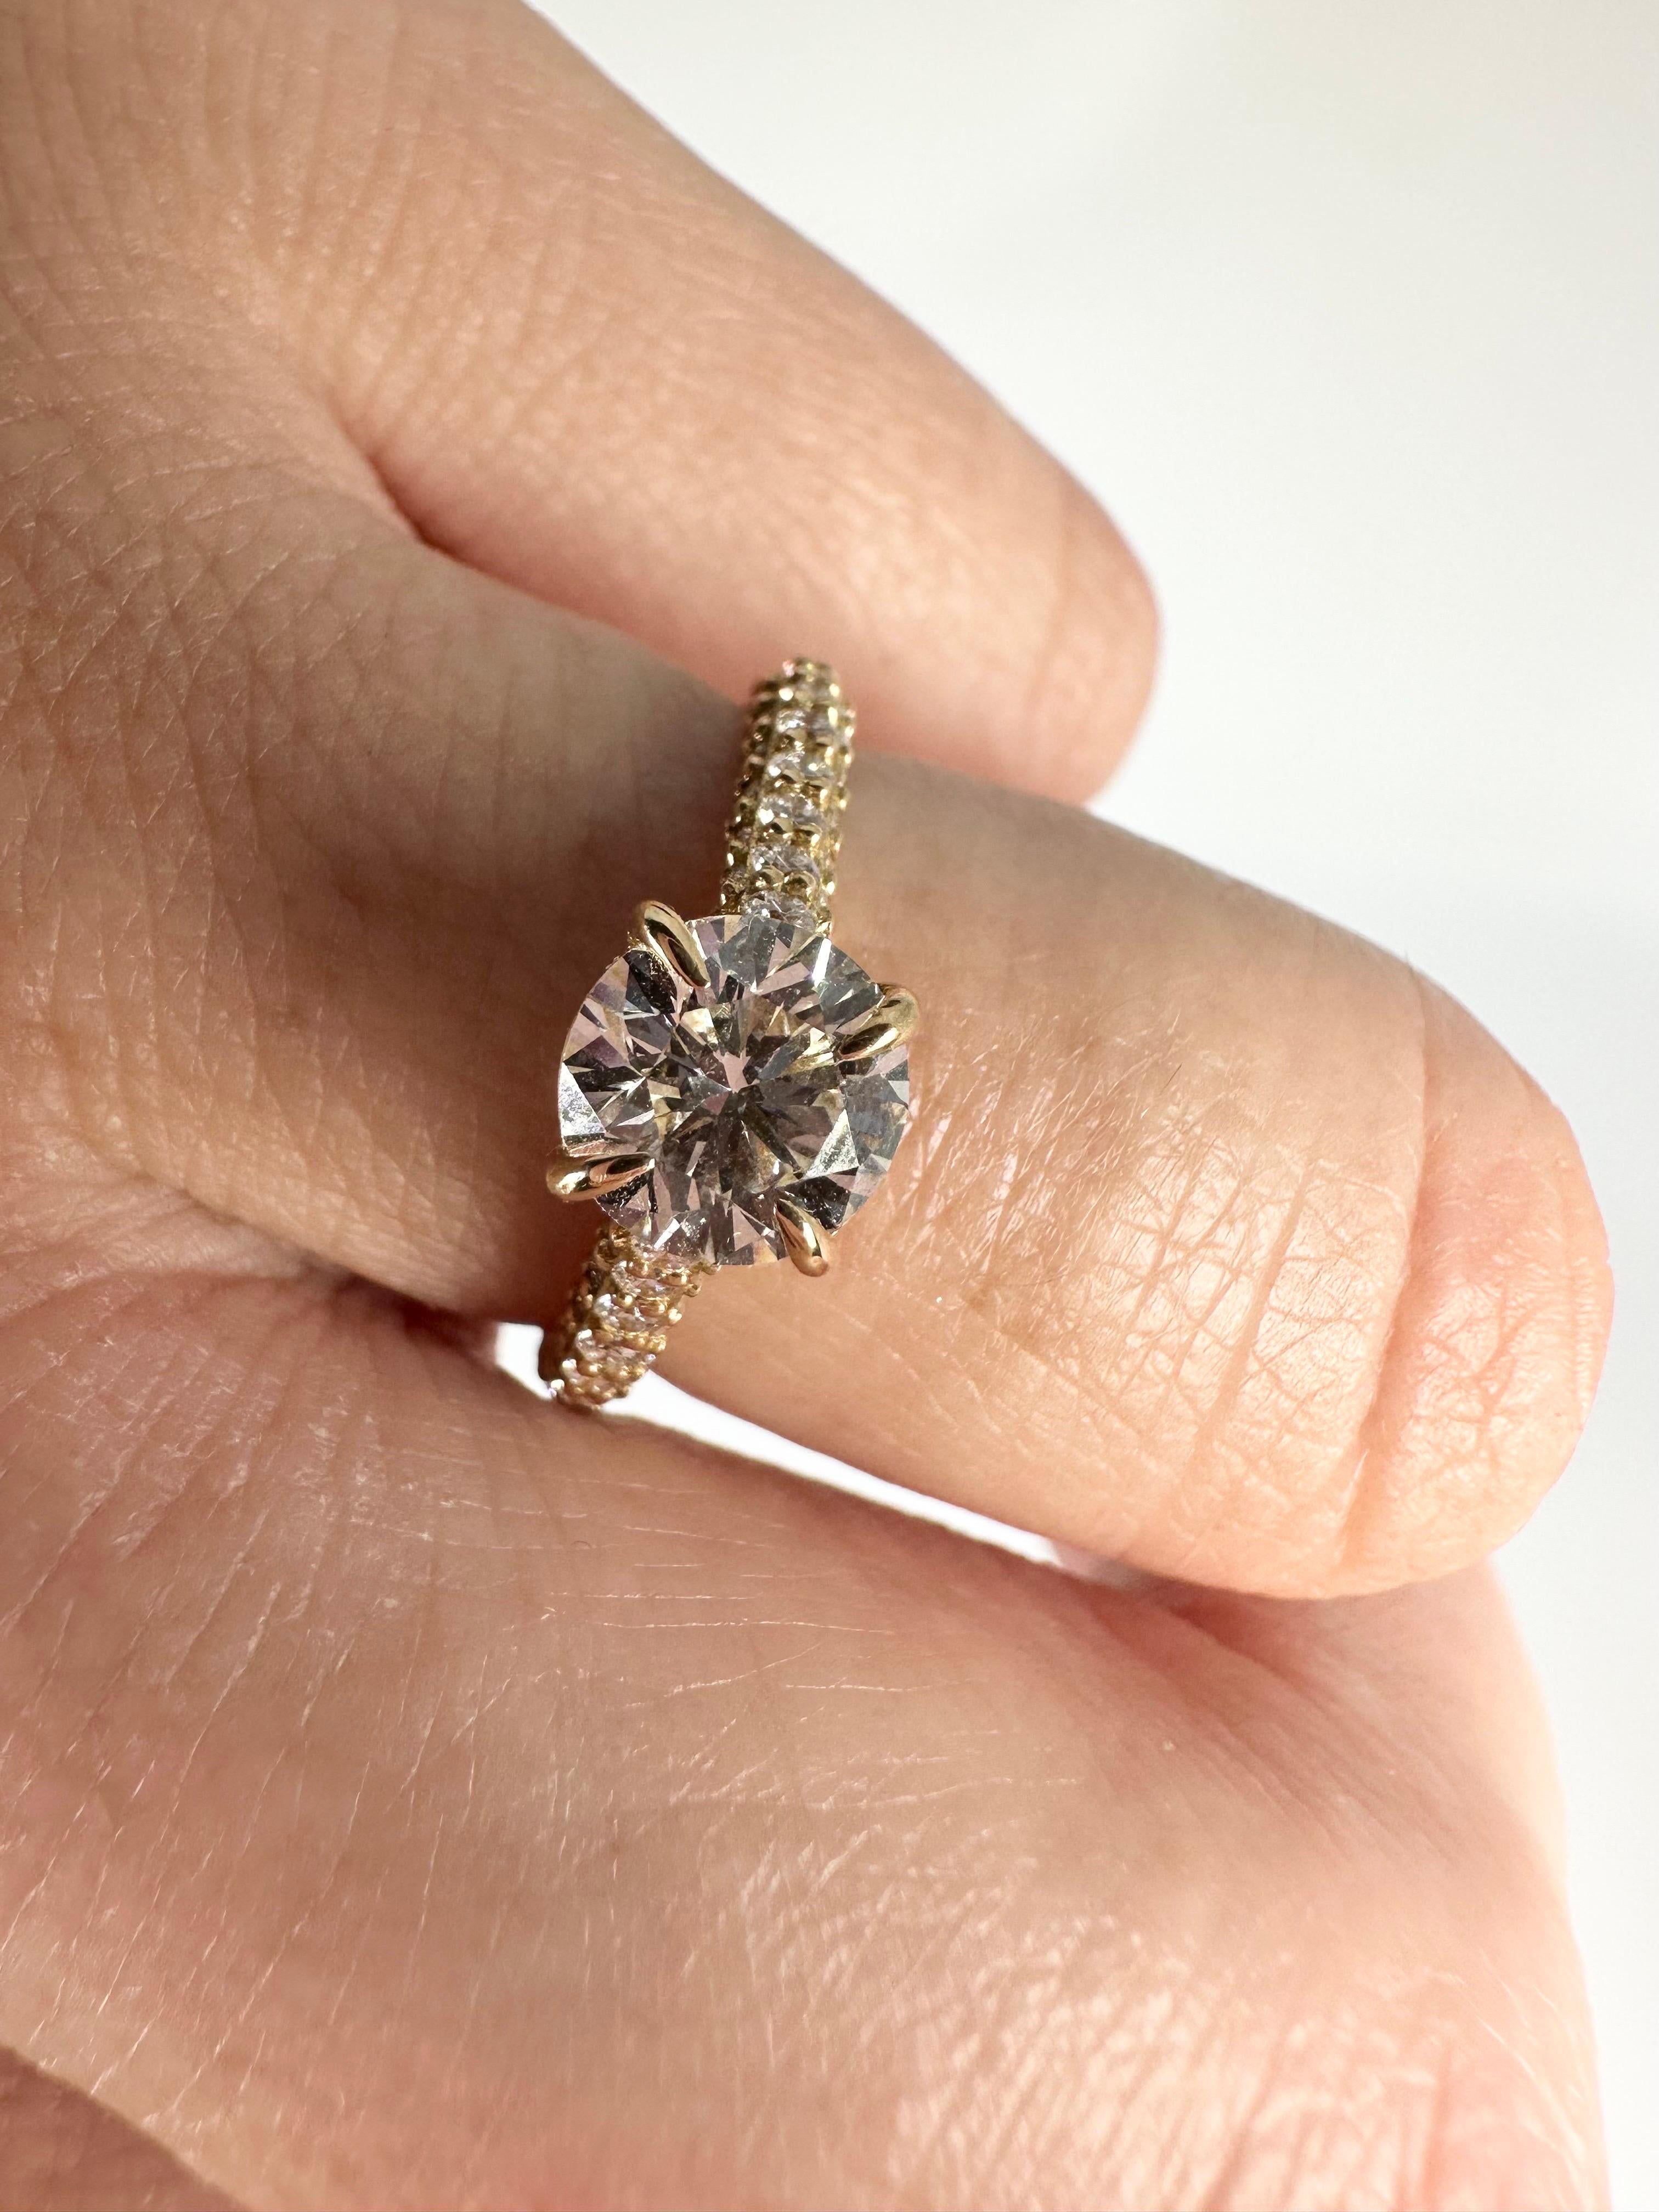 Round Cut 1.74 Carat Diamond Engagement Ring GIA Certified 18 Karat Yellow Gold Ring For Sale